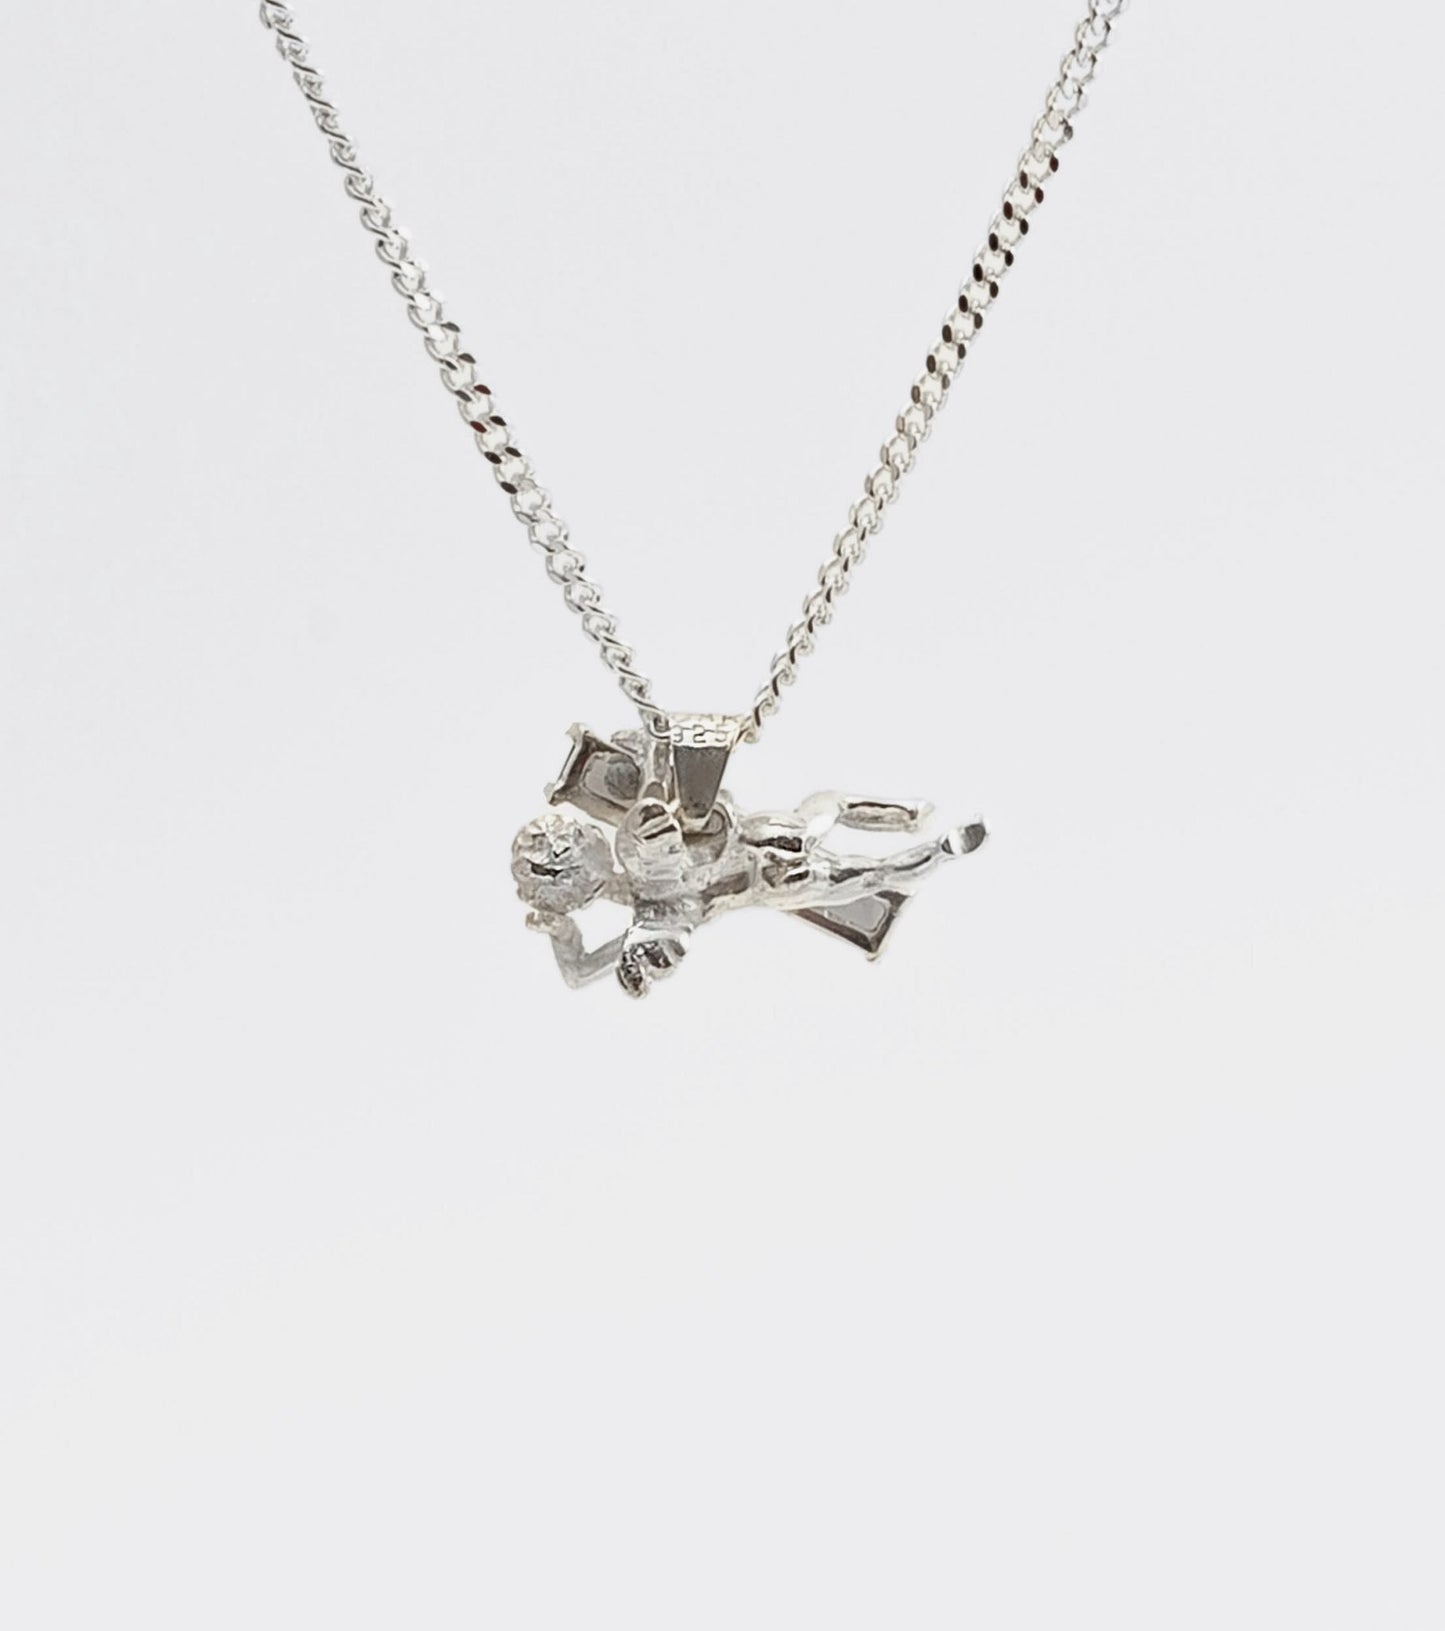 CHERUB necklace with smokey quartz - Sar Jewellery